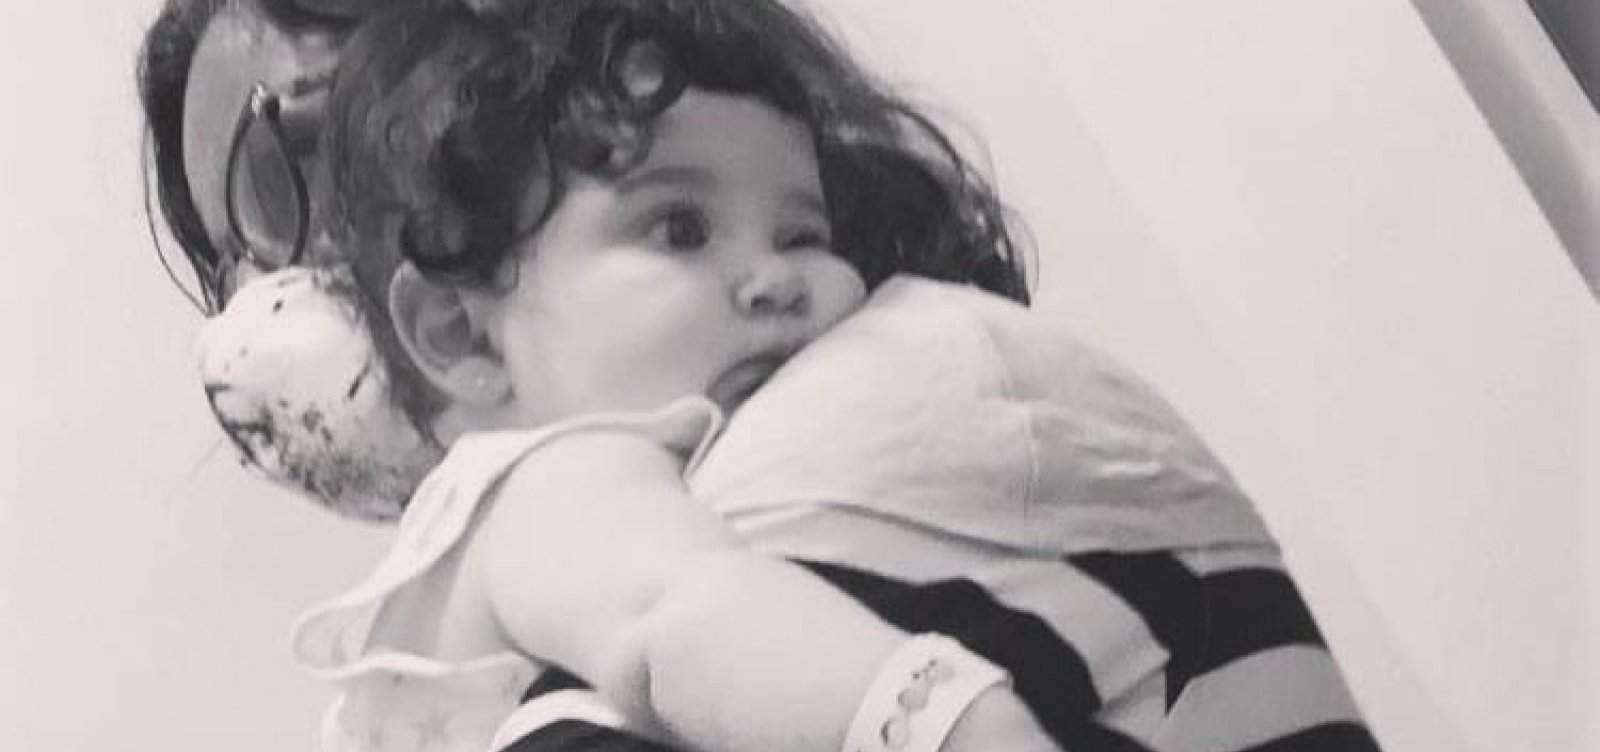 Mãe denuncia hospital de Feira de Santana por negligência em morte de bebê de 6 meses